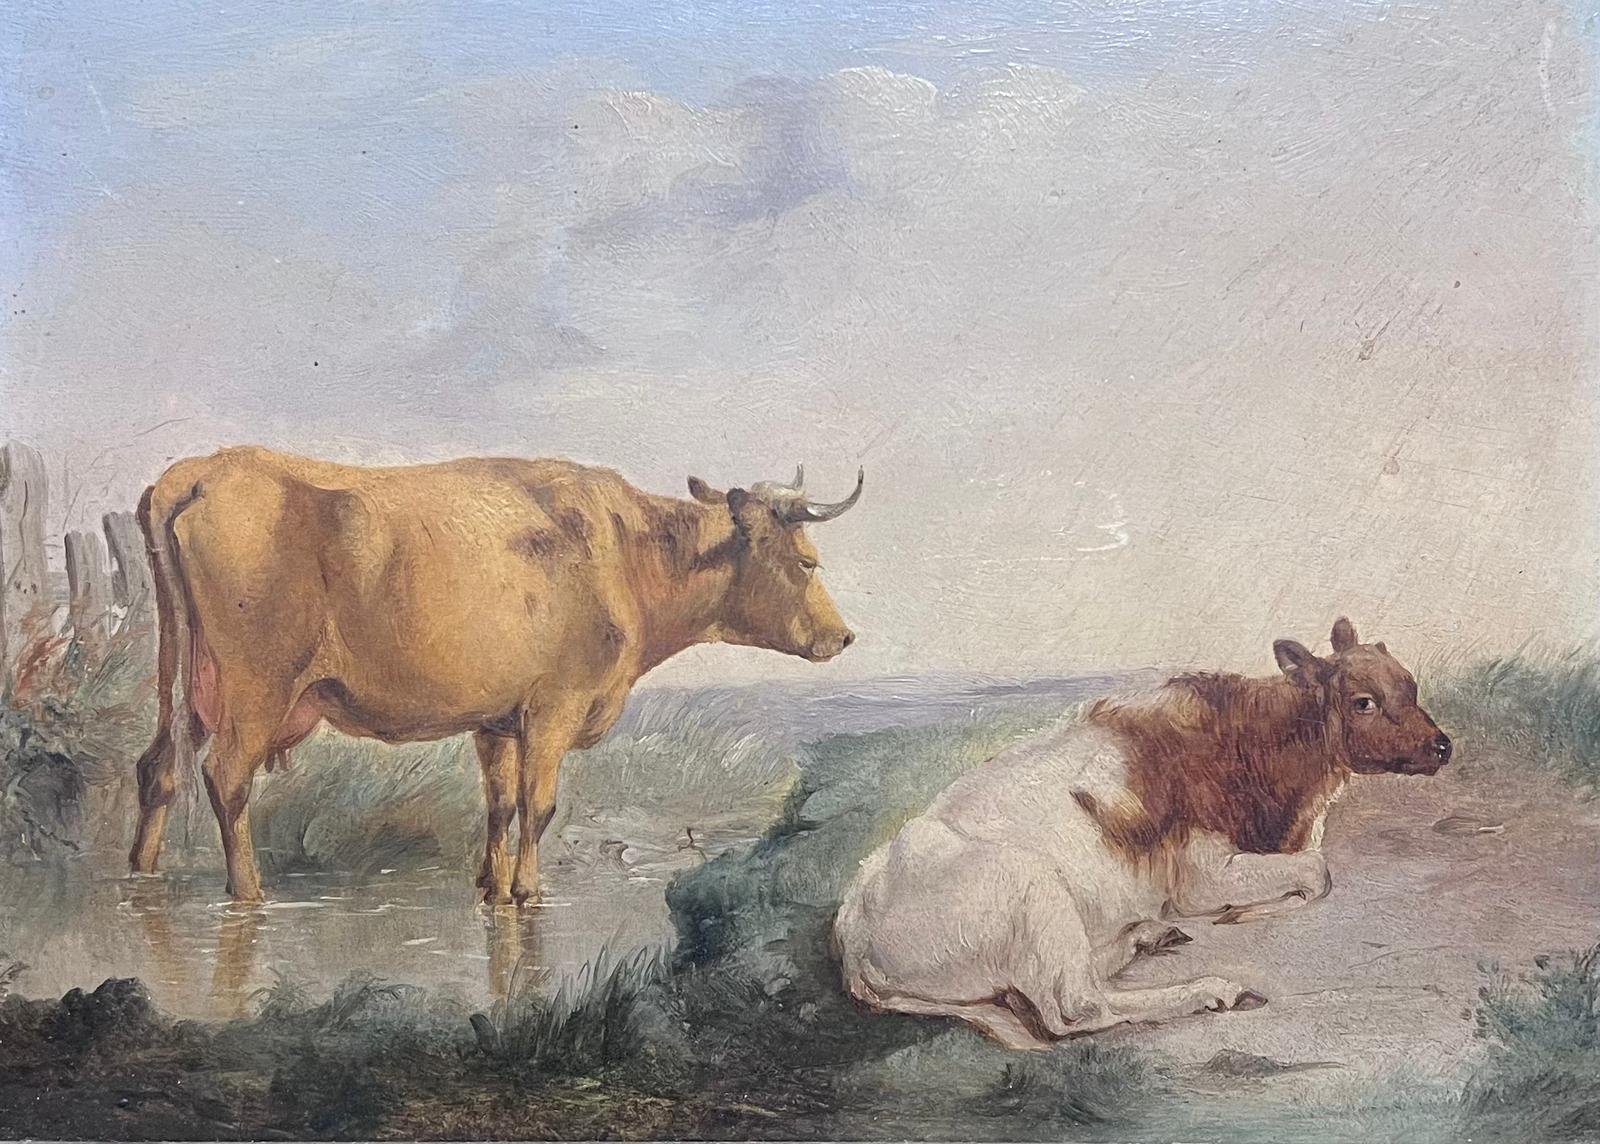 Cattle in Pastoral Landscape von Stream, viktorianisches englisches Ölgemälde, vergoldetes Rahmen – Painting von English Victorian artist